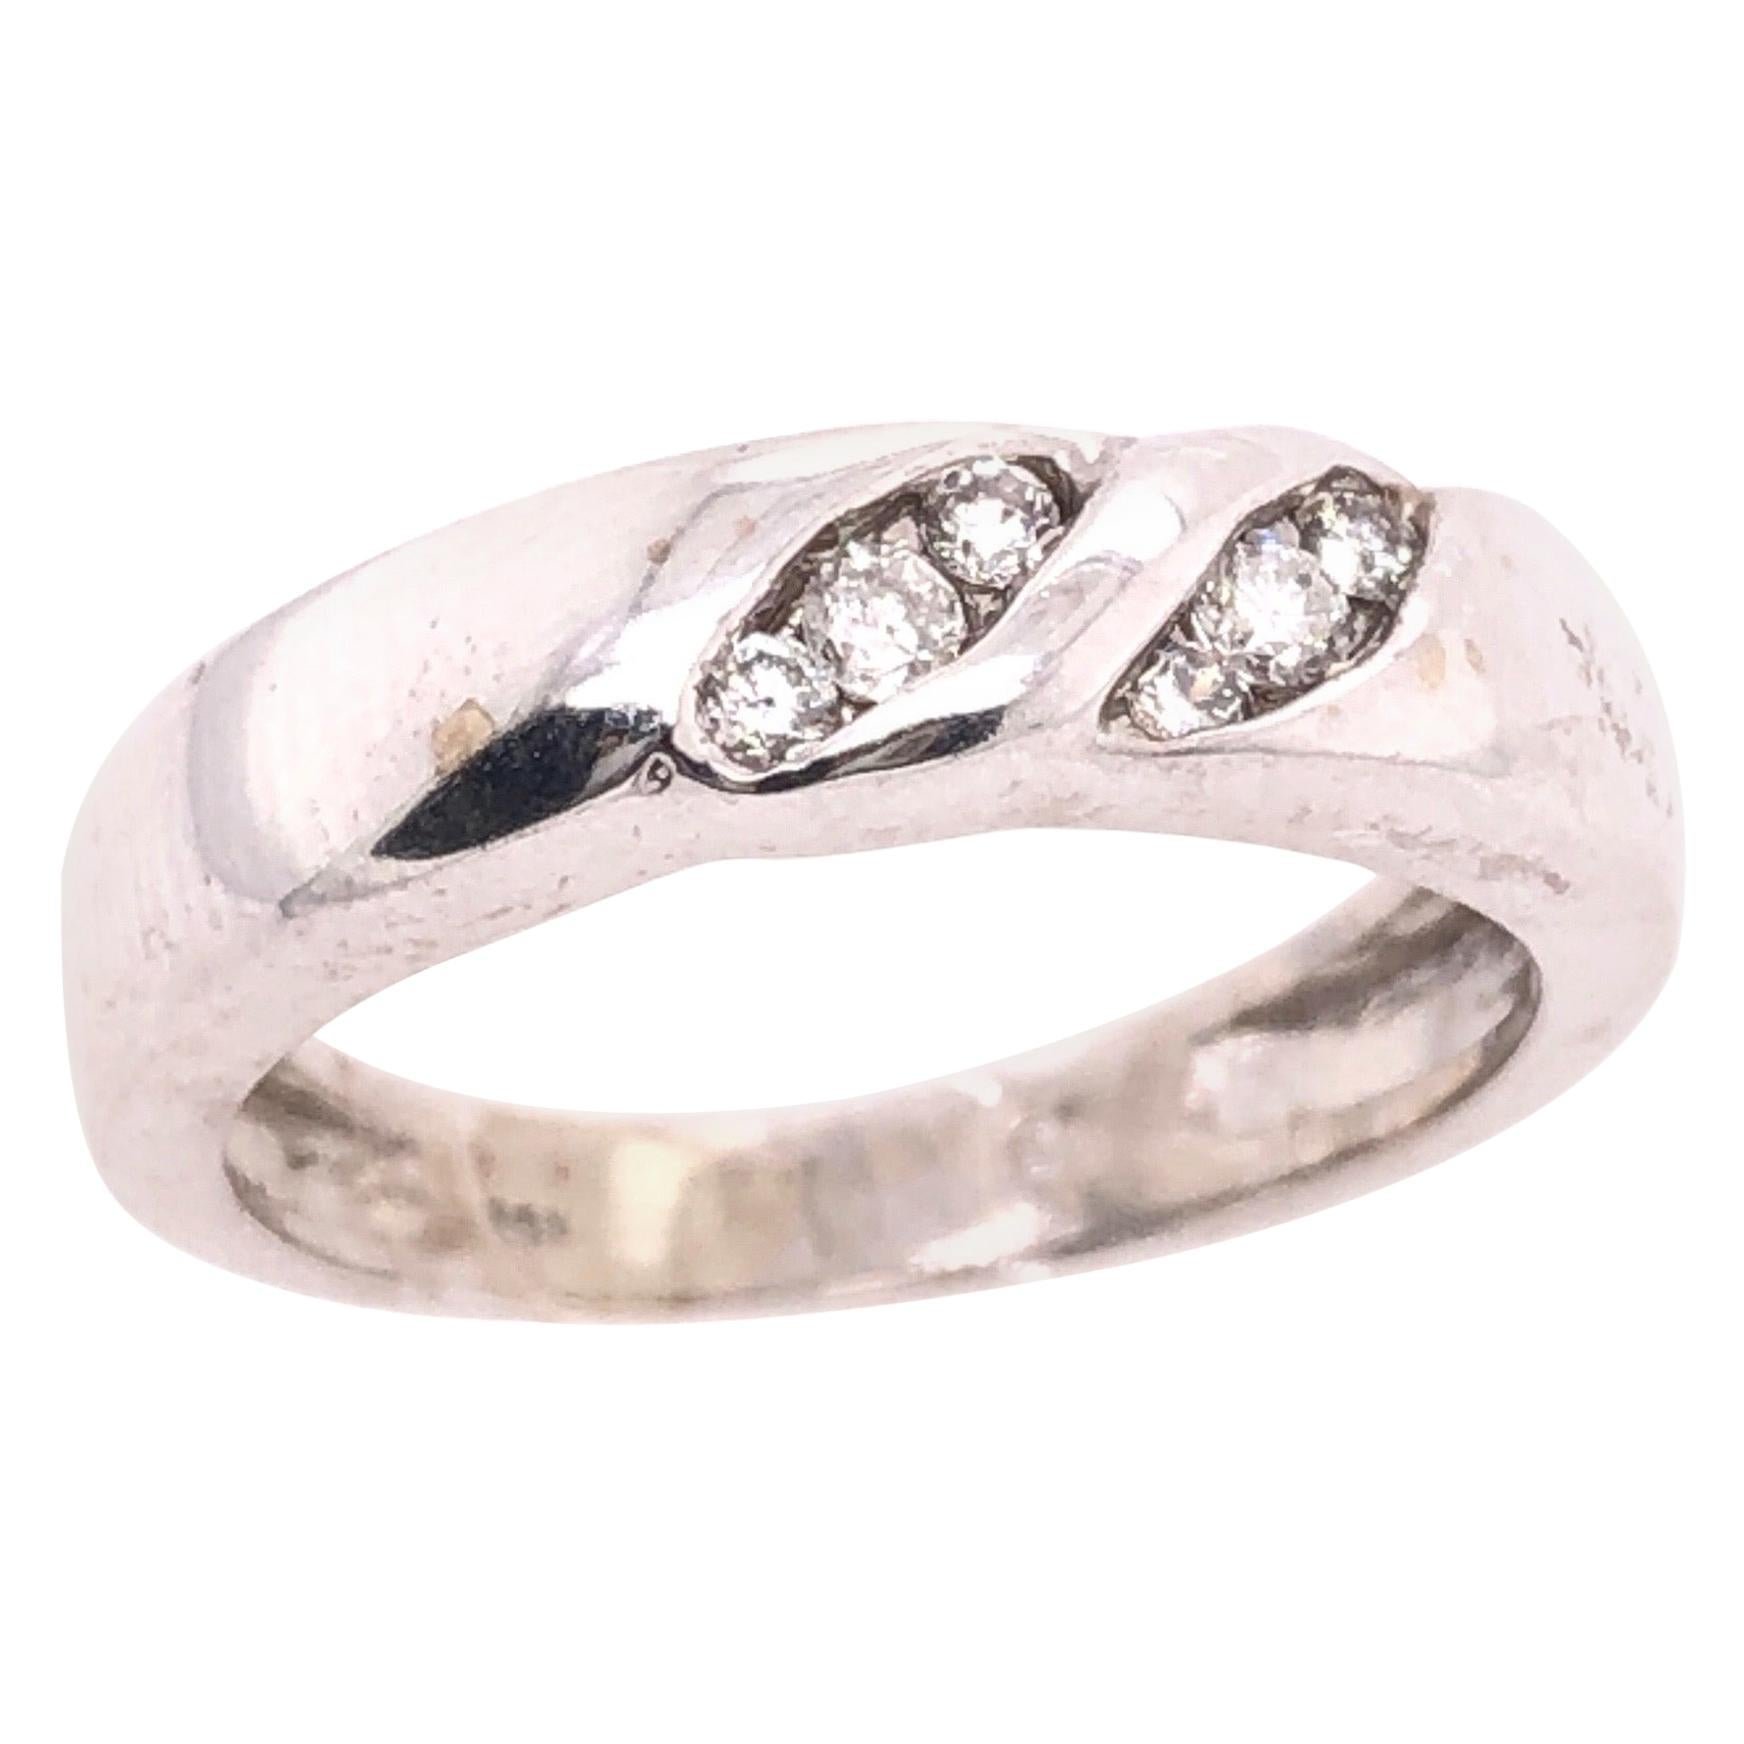 14 Karat White Gold with Diamonds Wedding Band / Bridal Ring